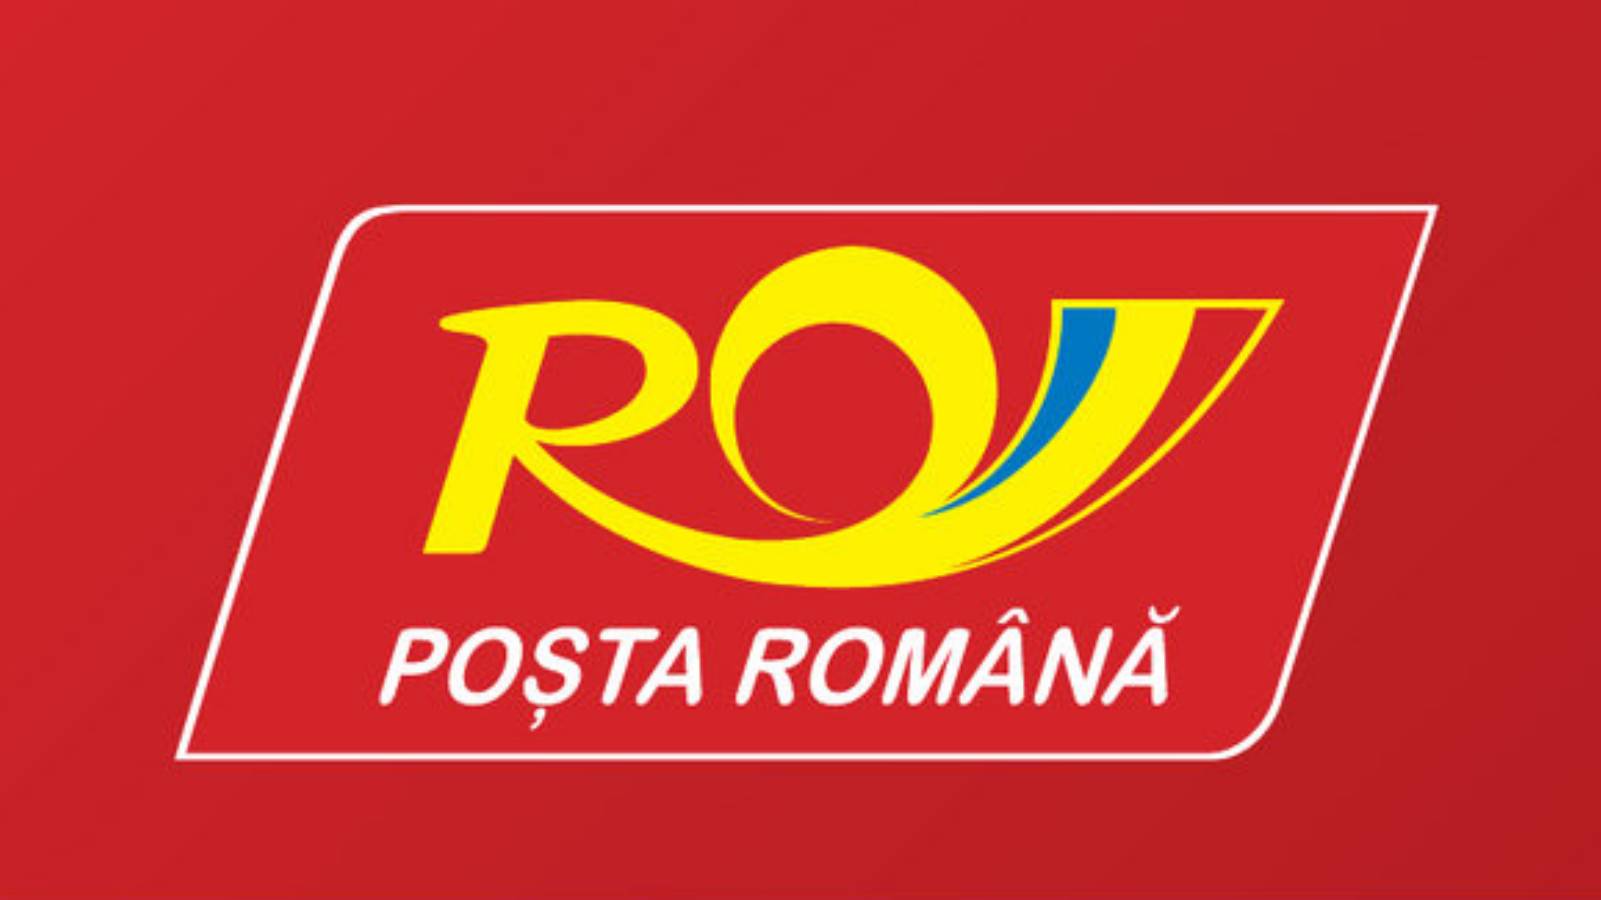 Traffico postale rumeno Gran Bretagna